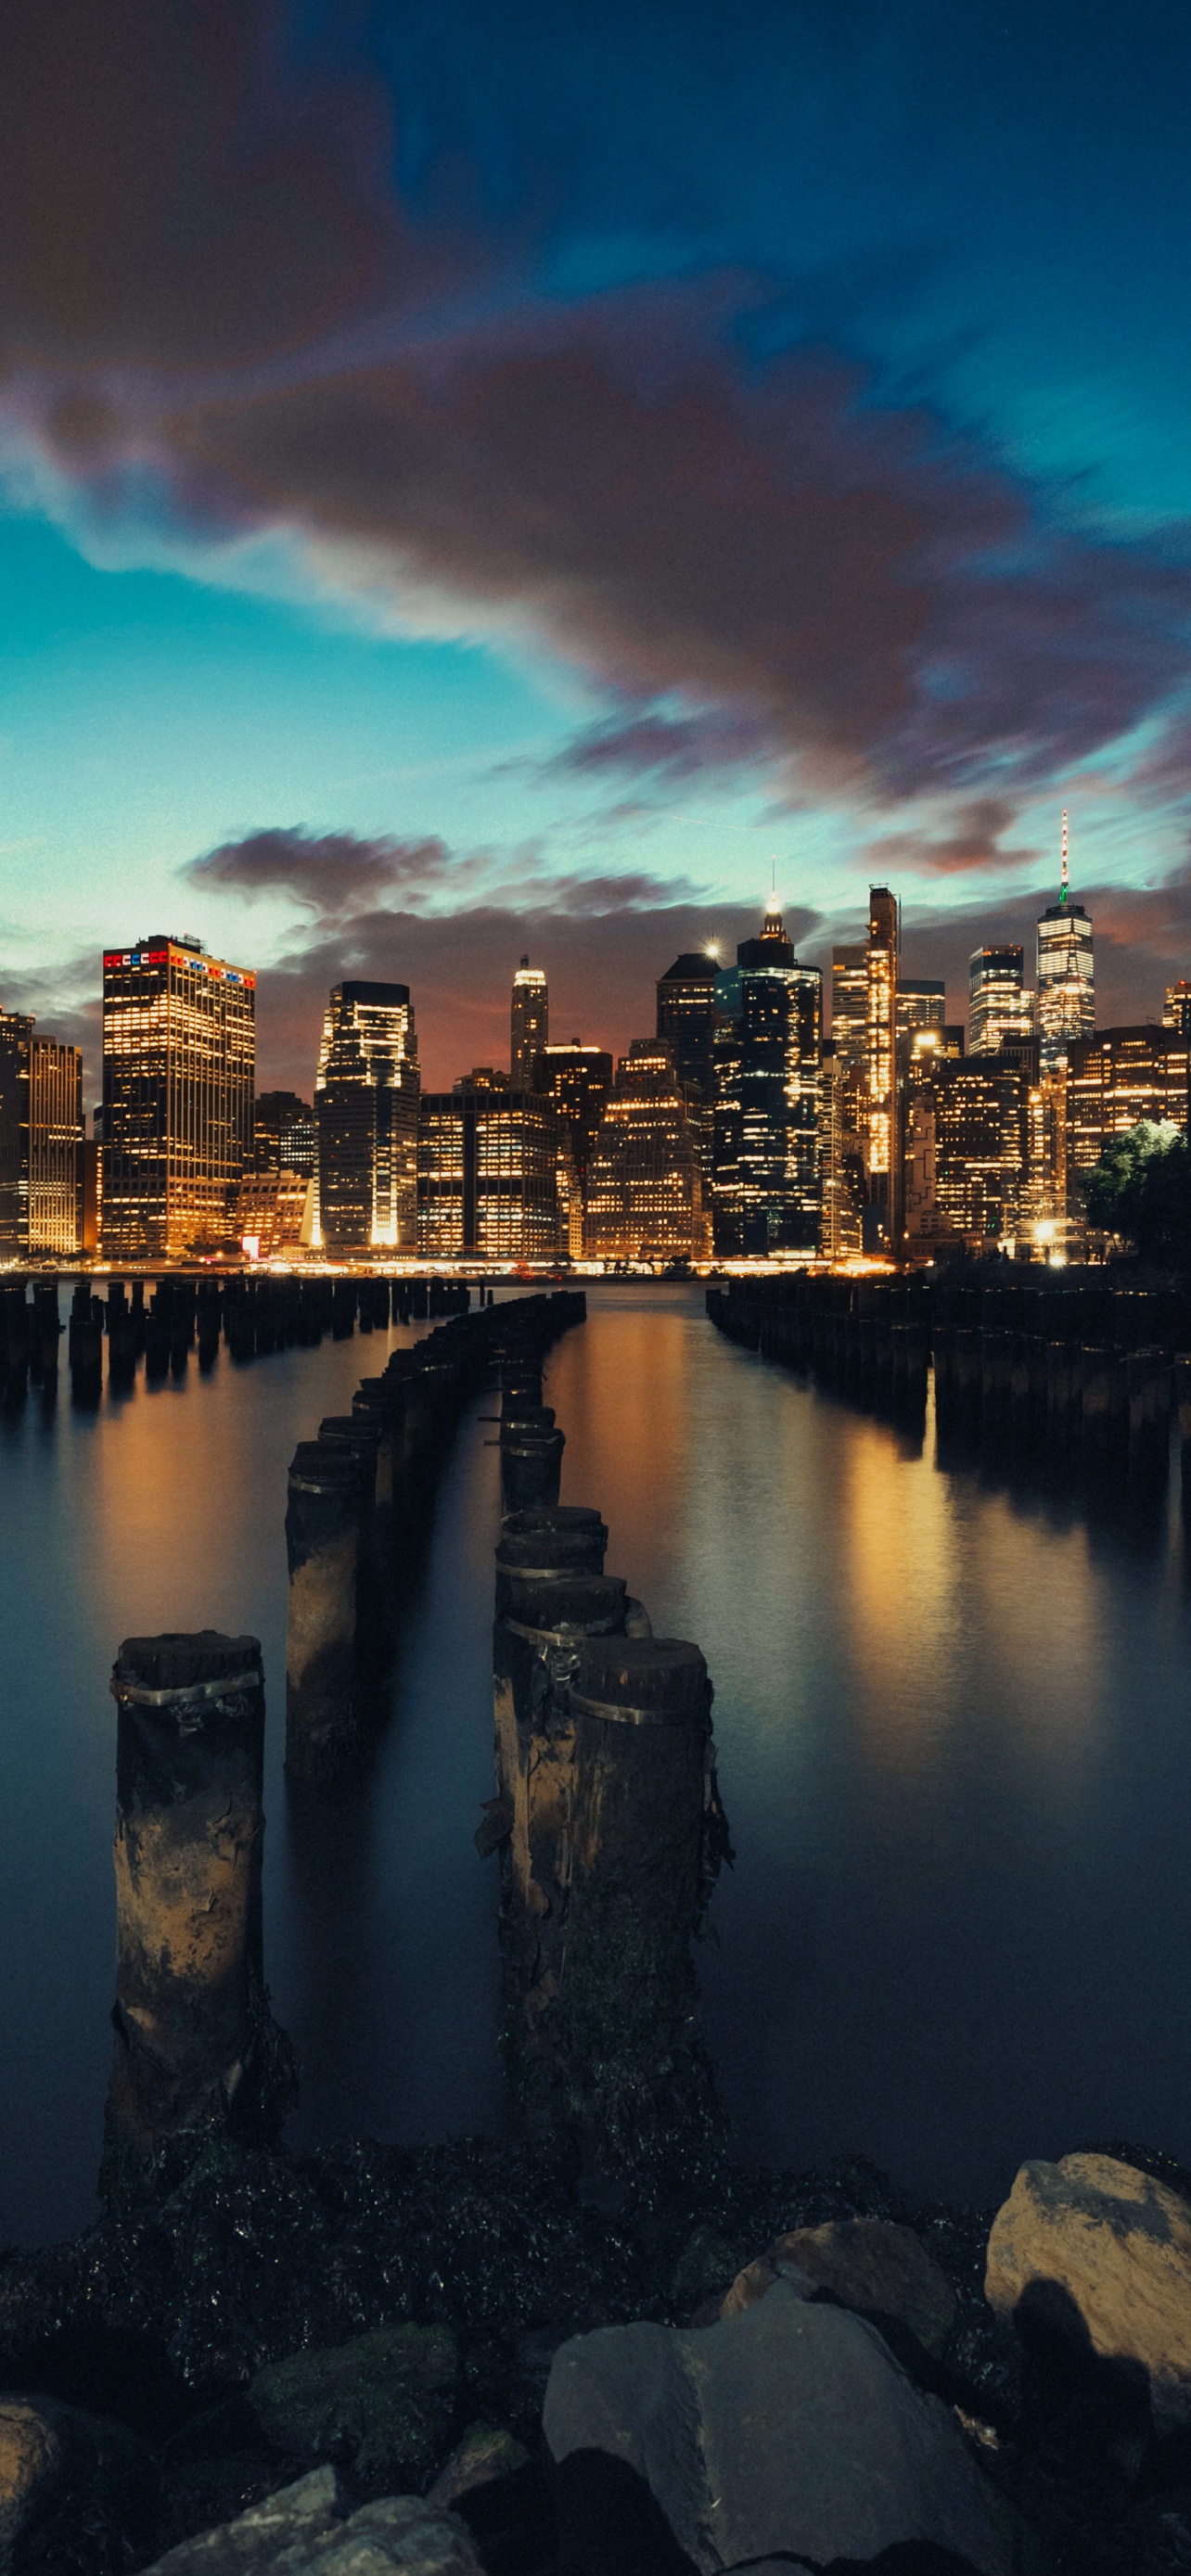 Với độ phân giải 4K rực rỡ và khung cảnh tuyệt đẹp của thành phố New York, bạn sẽ thấy được mọi chi tiết hoàn toàn rõ ràng từng chi tiết và được thở không khí trầm lắng của thành phố bậc nhất thế giới vào buổi tối và hoàng hôn.